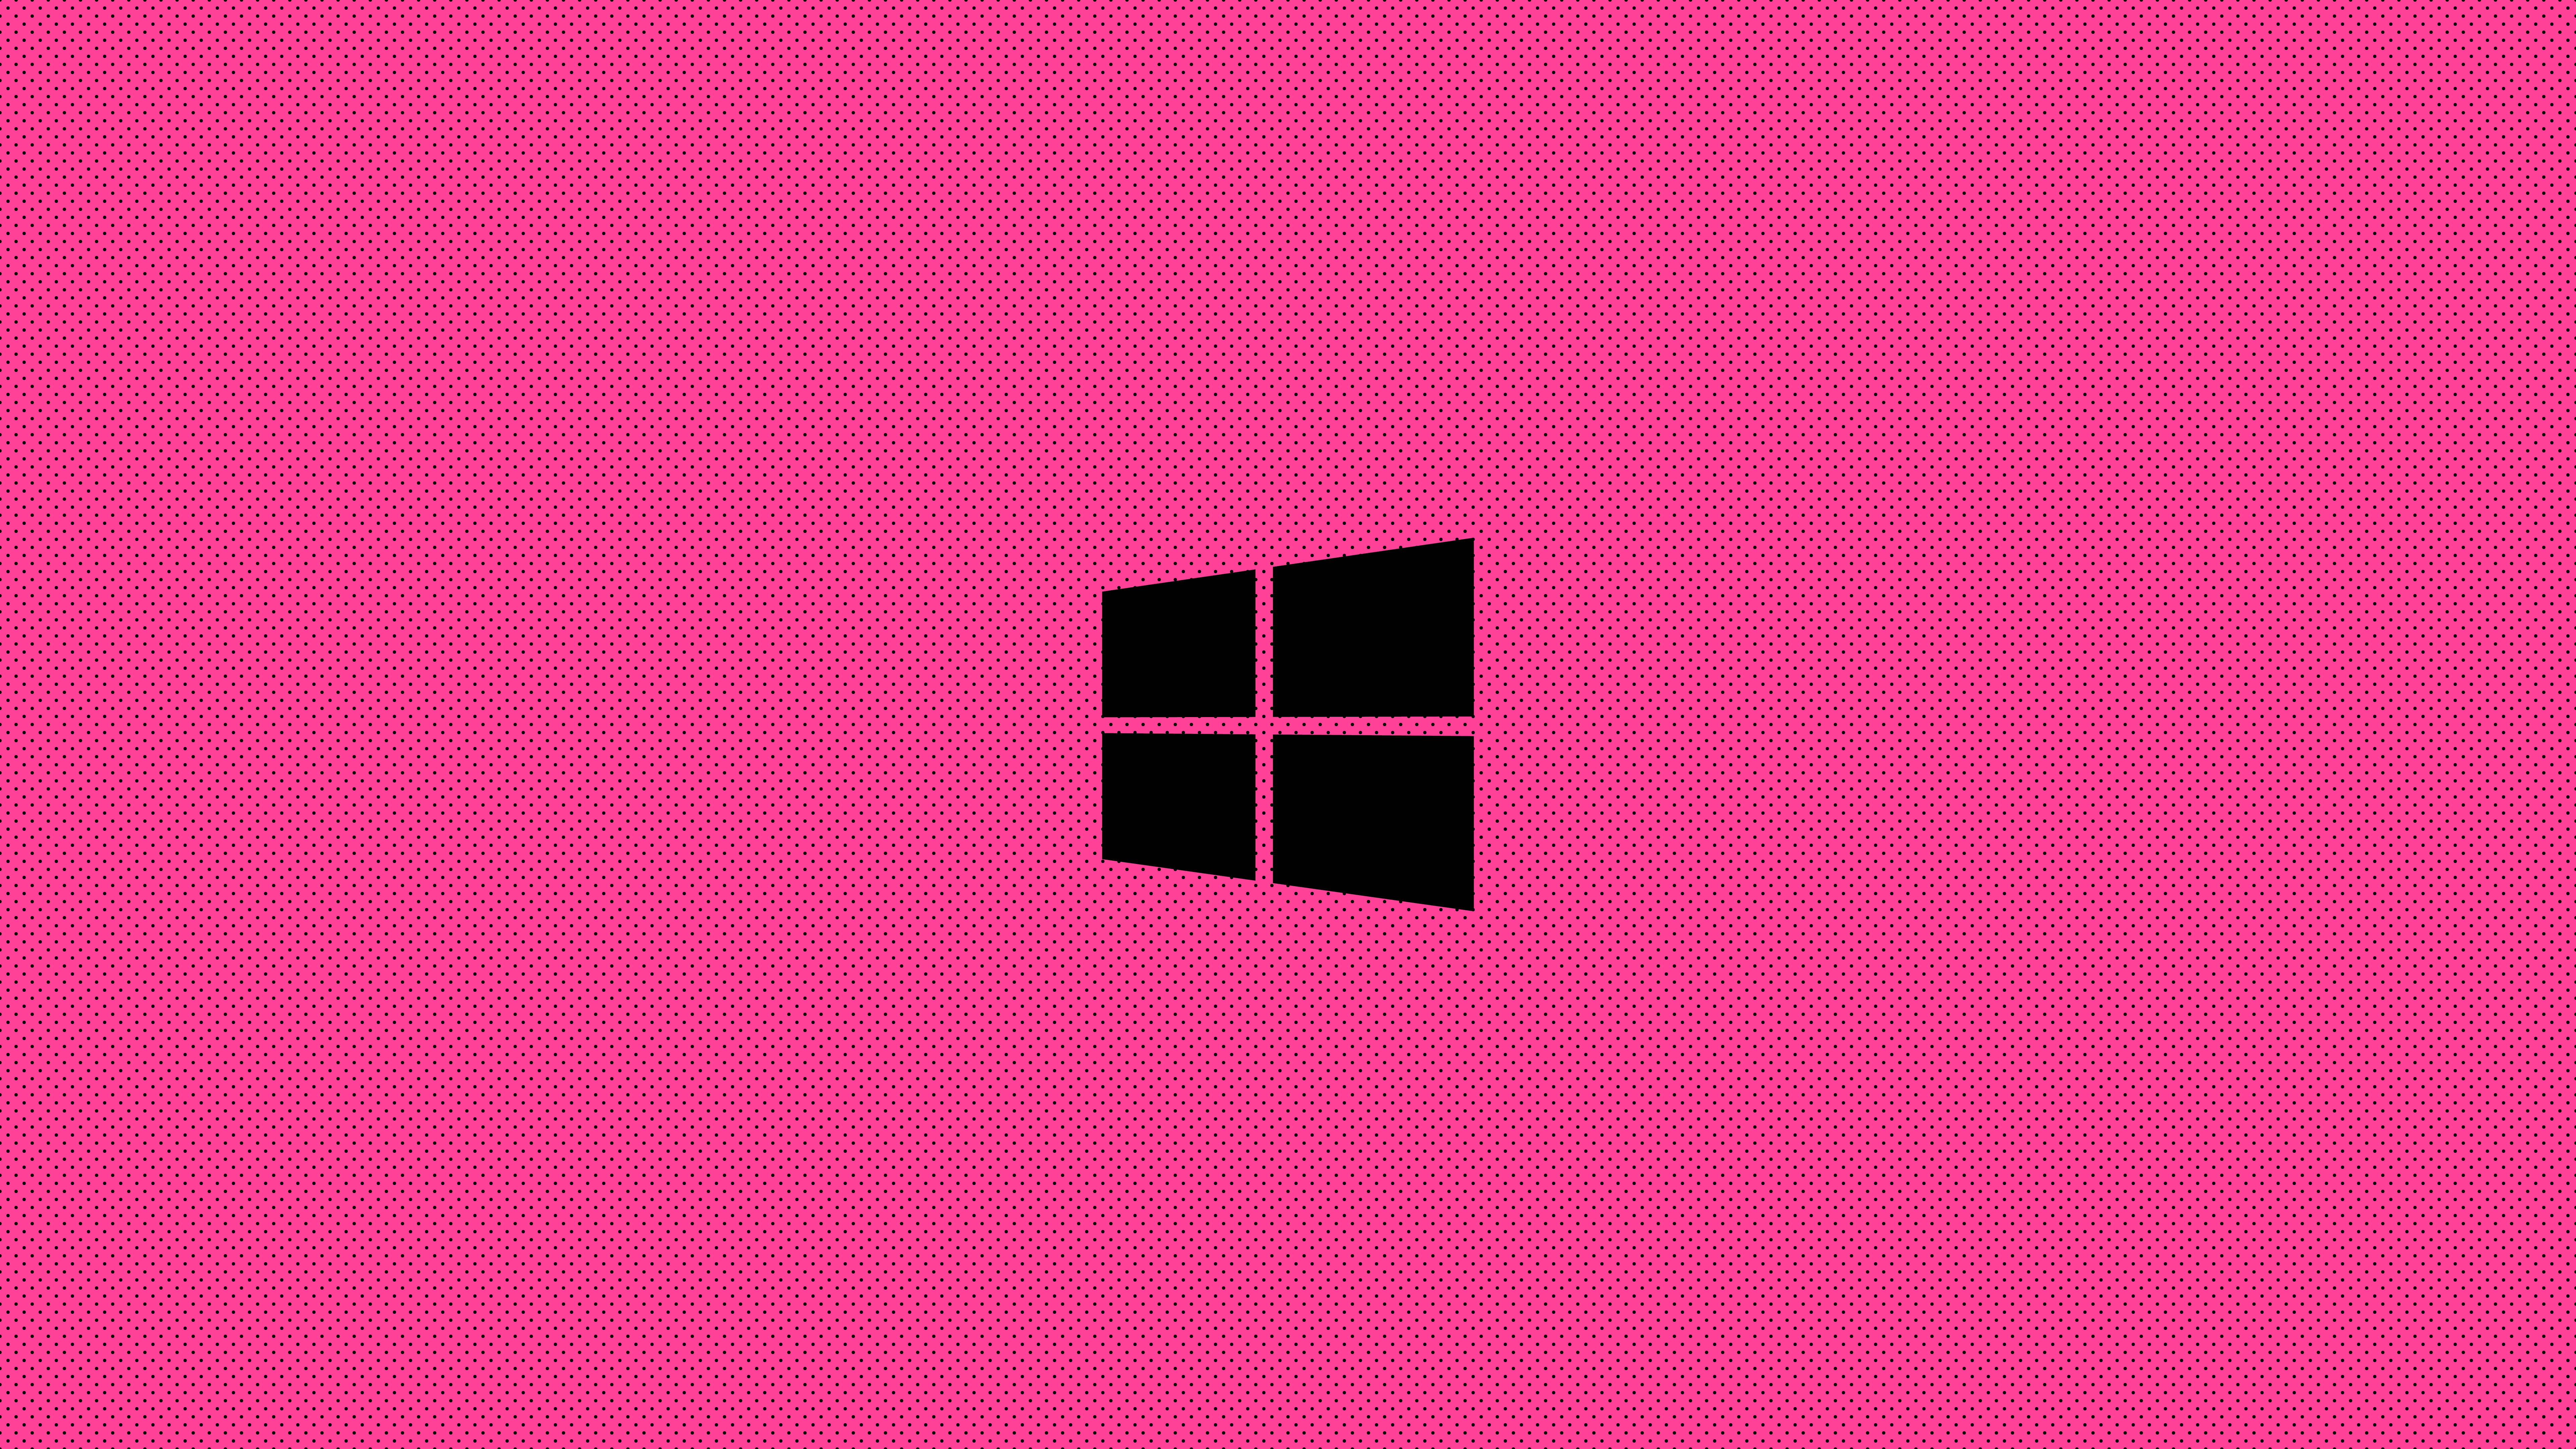 Chào mừng bạn đến với trang trí màn hình mới cho thiết bị của bạn: Windows Pink Minimal Logo! Với thiết kế đơn giản và tinh tế, hình nền này giúp bạn tạo sự độc đáo và quyến rũ cho màn hình, đồng thời mang đến cảm giác mới mẻ, cực kỳ bắt mắt và ấn tượng cho người dùng.